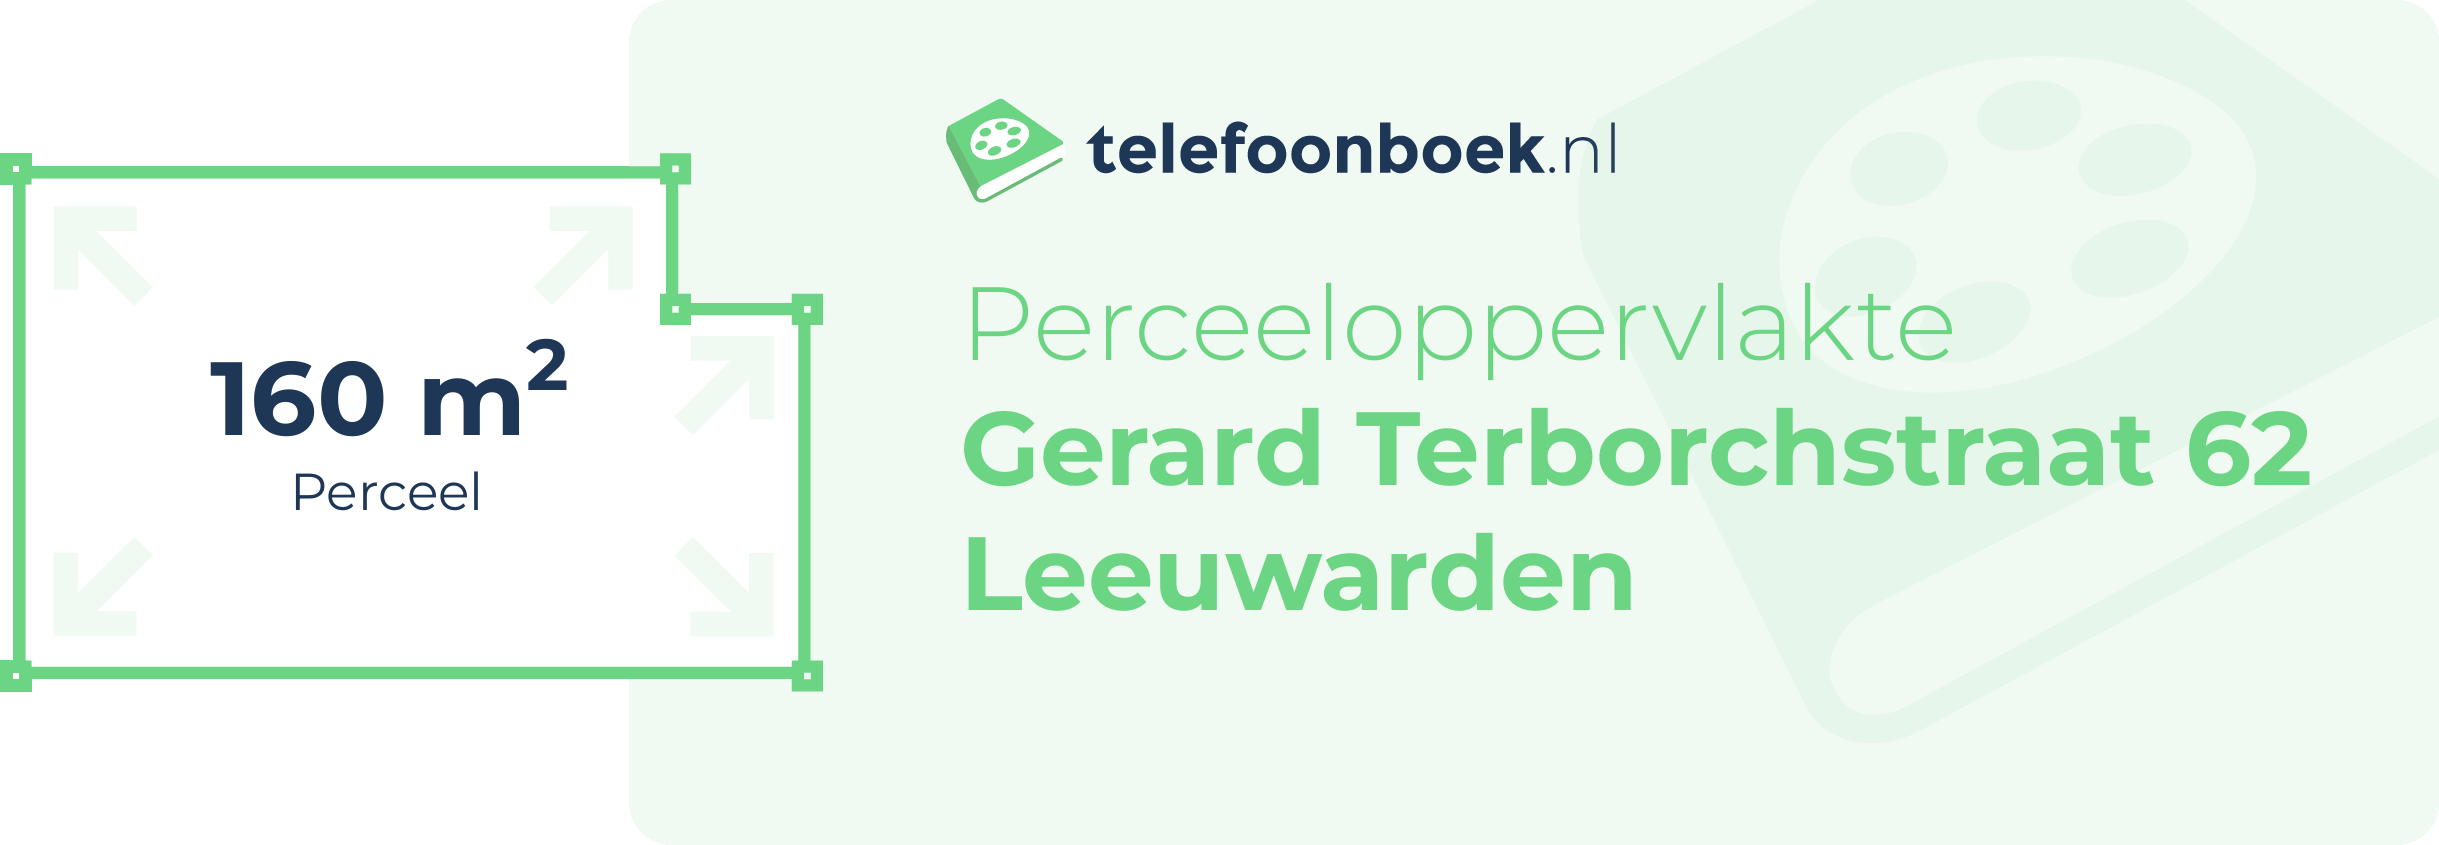 Perceeloppervlakte Gerard Terborchstraat 62 Leeuwarden